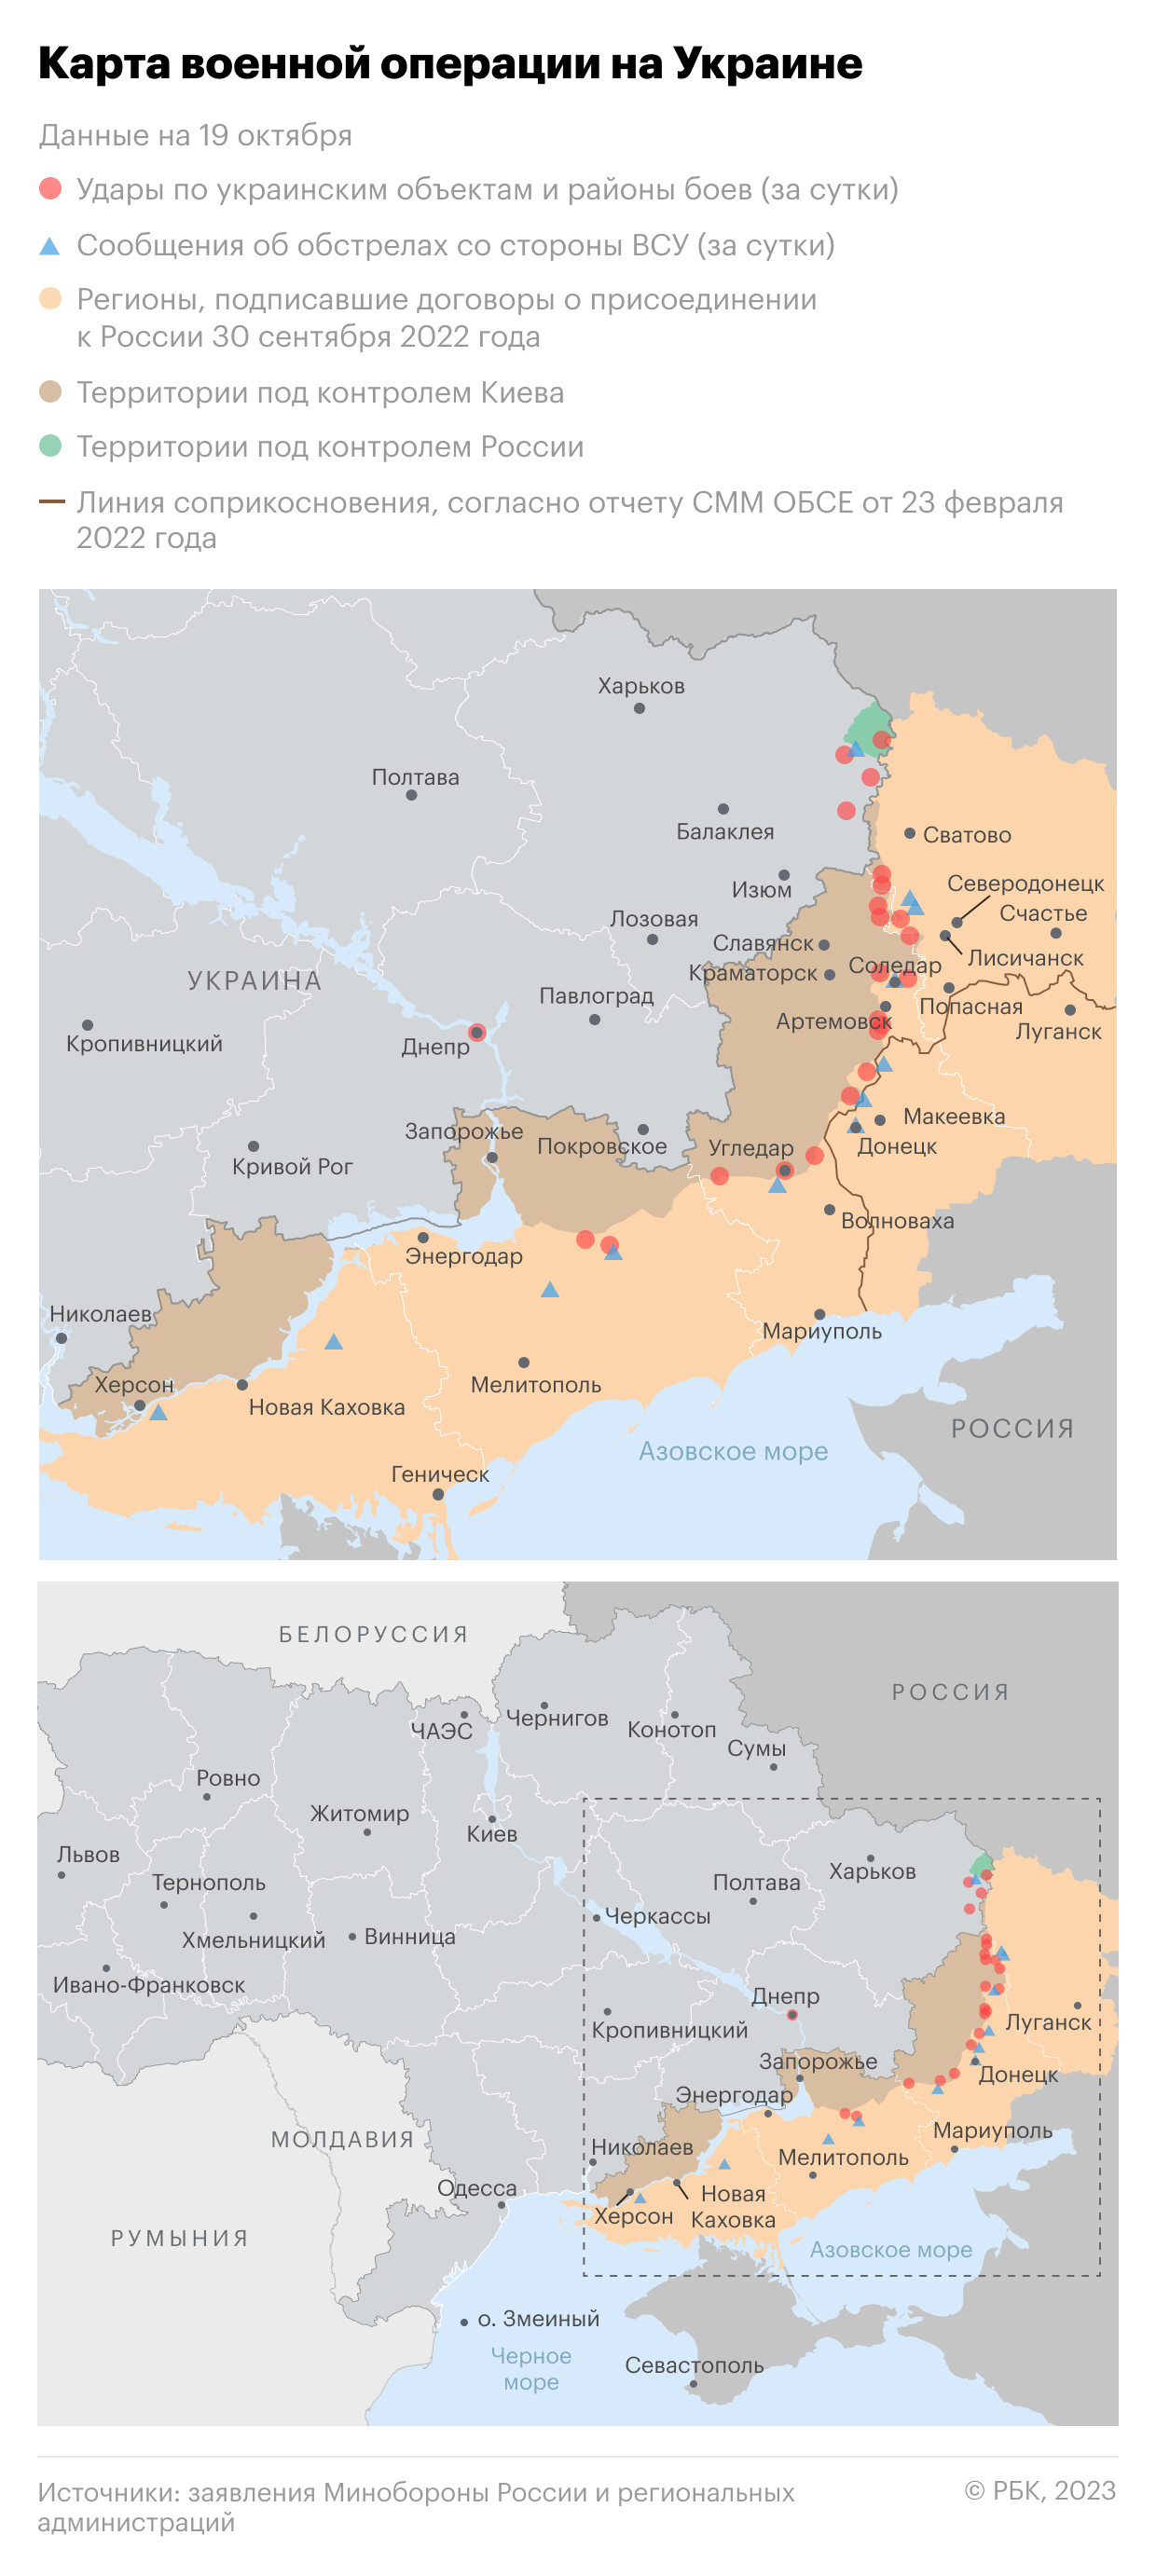 Военная операция на Украине. Карта на 19 октября